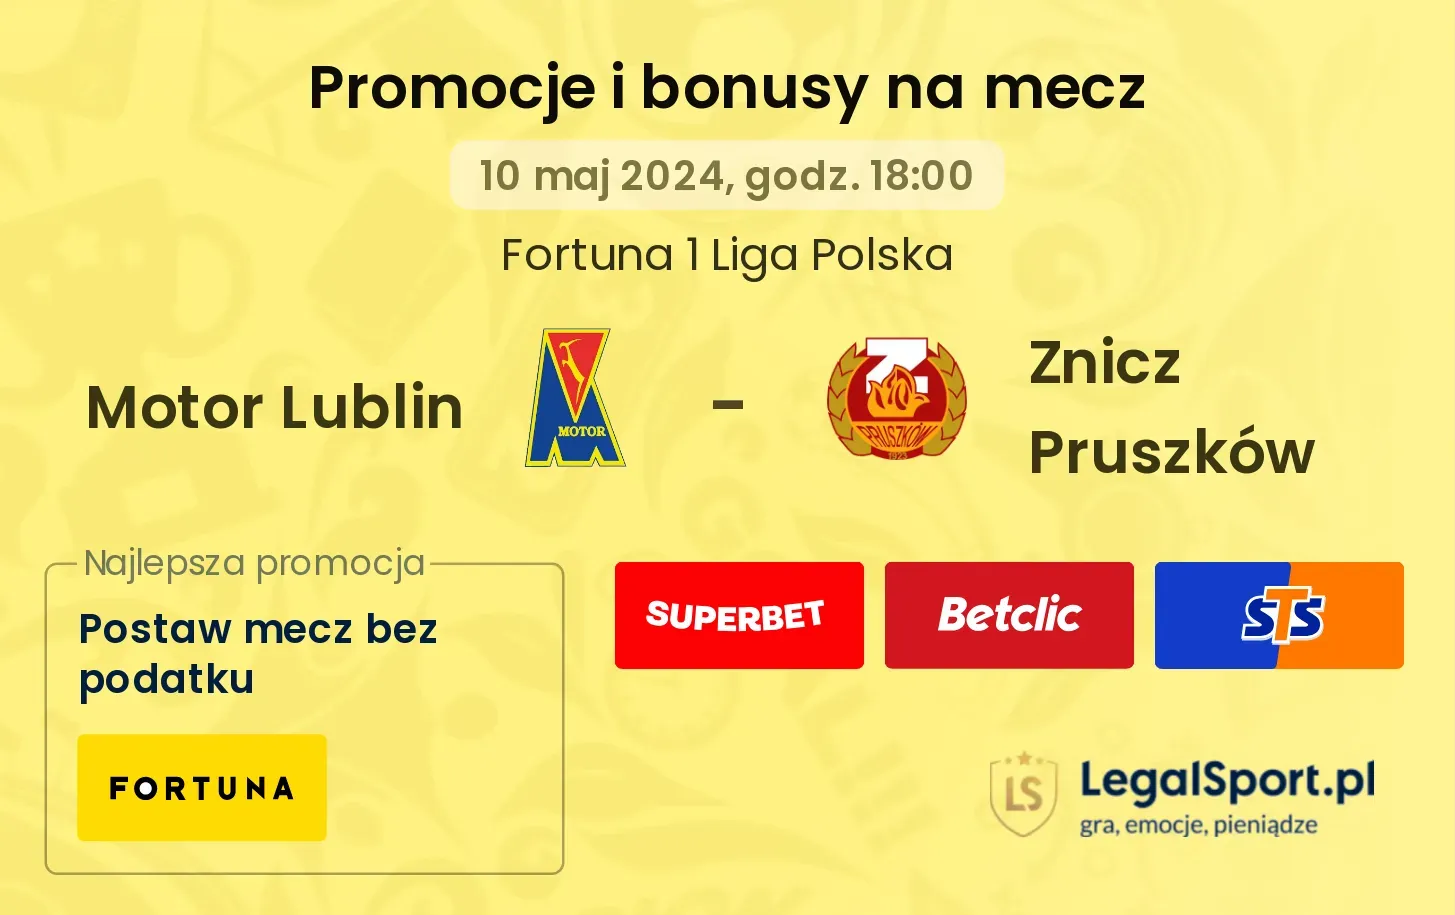 Motor Lublin - Znicz Pruszków promocje bonusy na mecz